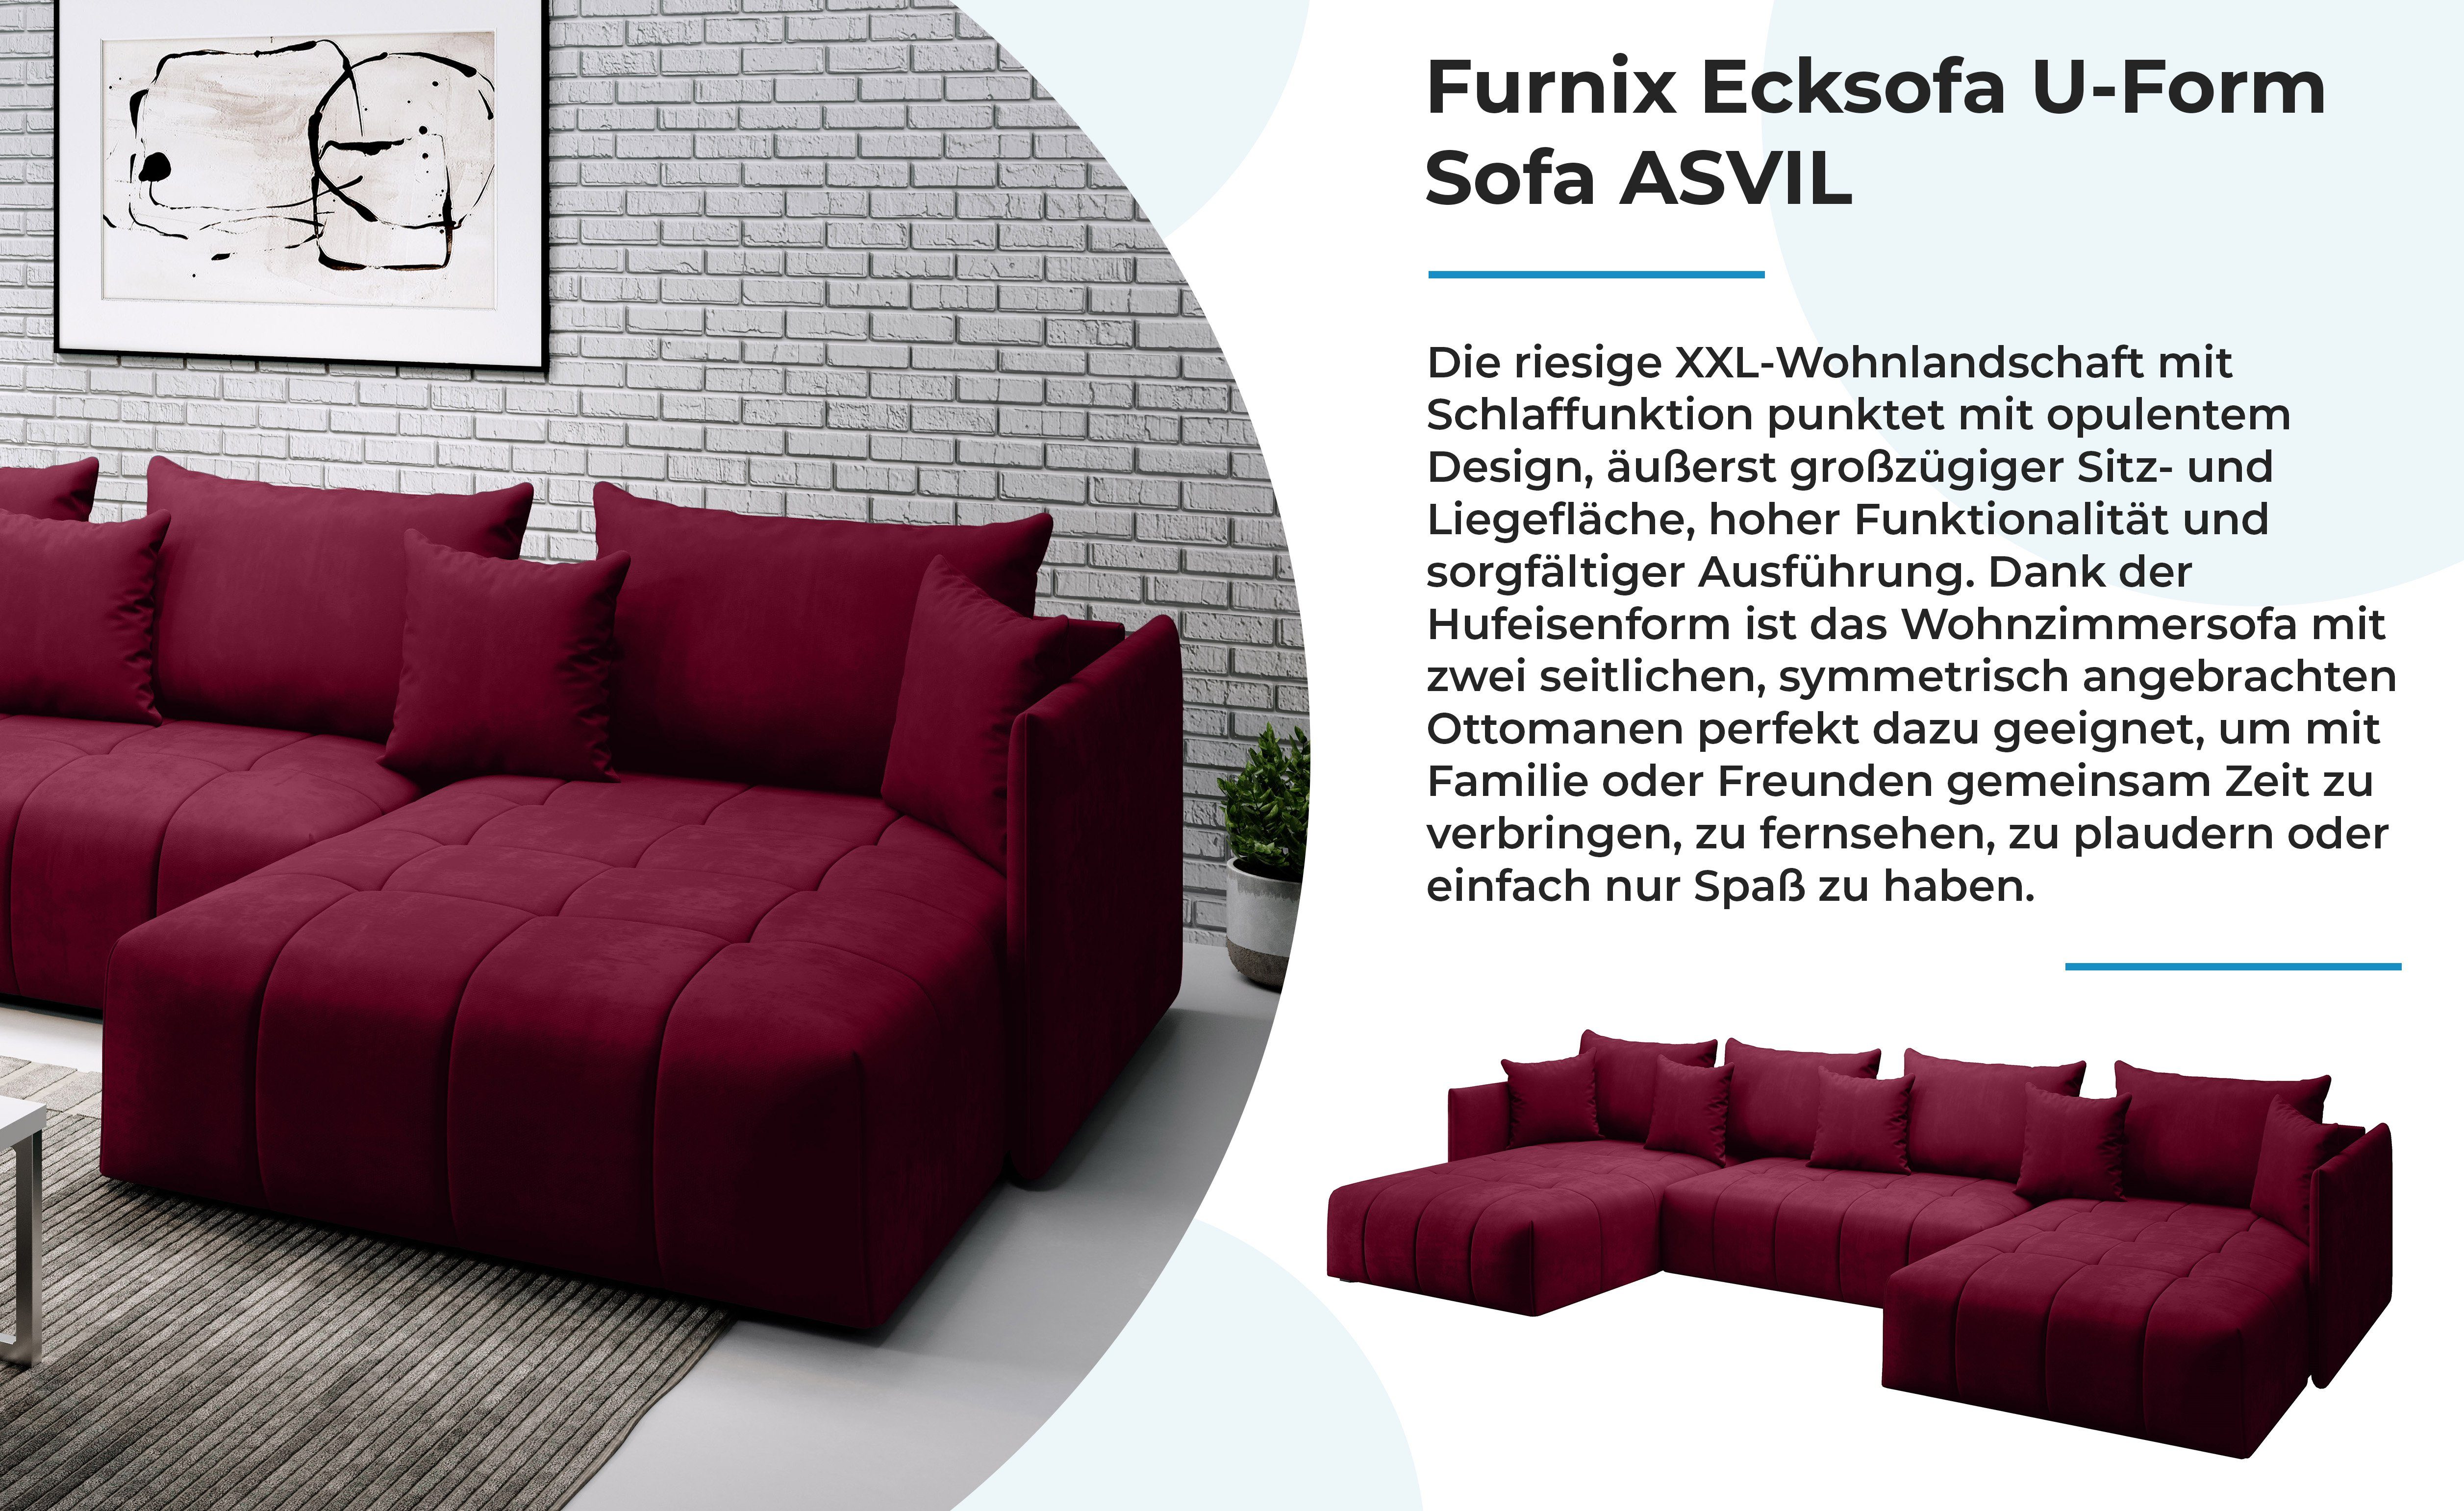 Ecksofa U-Form-Sofa x Made in Rot mit T180 ASVIL Farbauswahl, B353 x und Bettkasten, cm, Furnix Europe MH59 Schlaffunktion H80